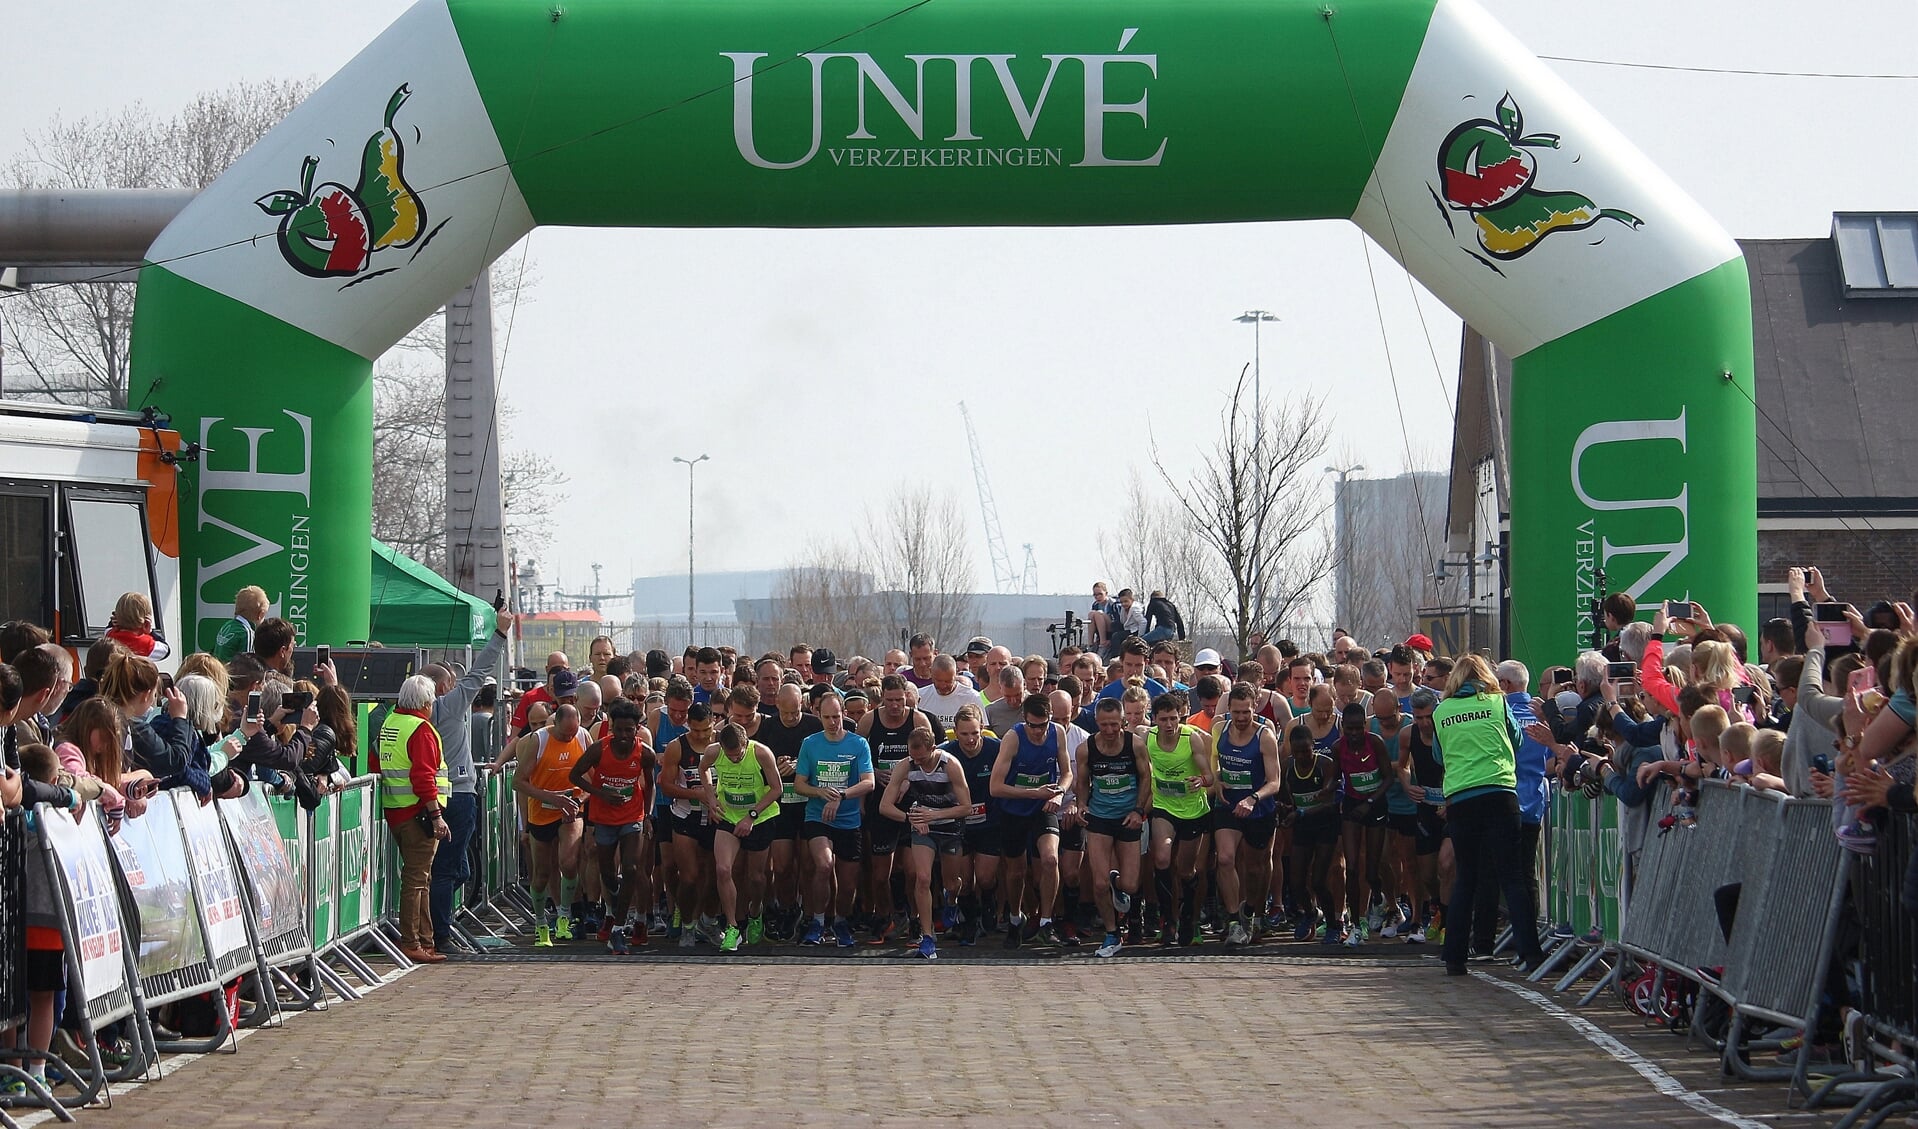 Klaar voor de start van de Univé halve marathon tijdens de Halve van Den Helder. (Foto: aangeleverd)